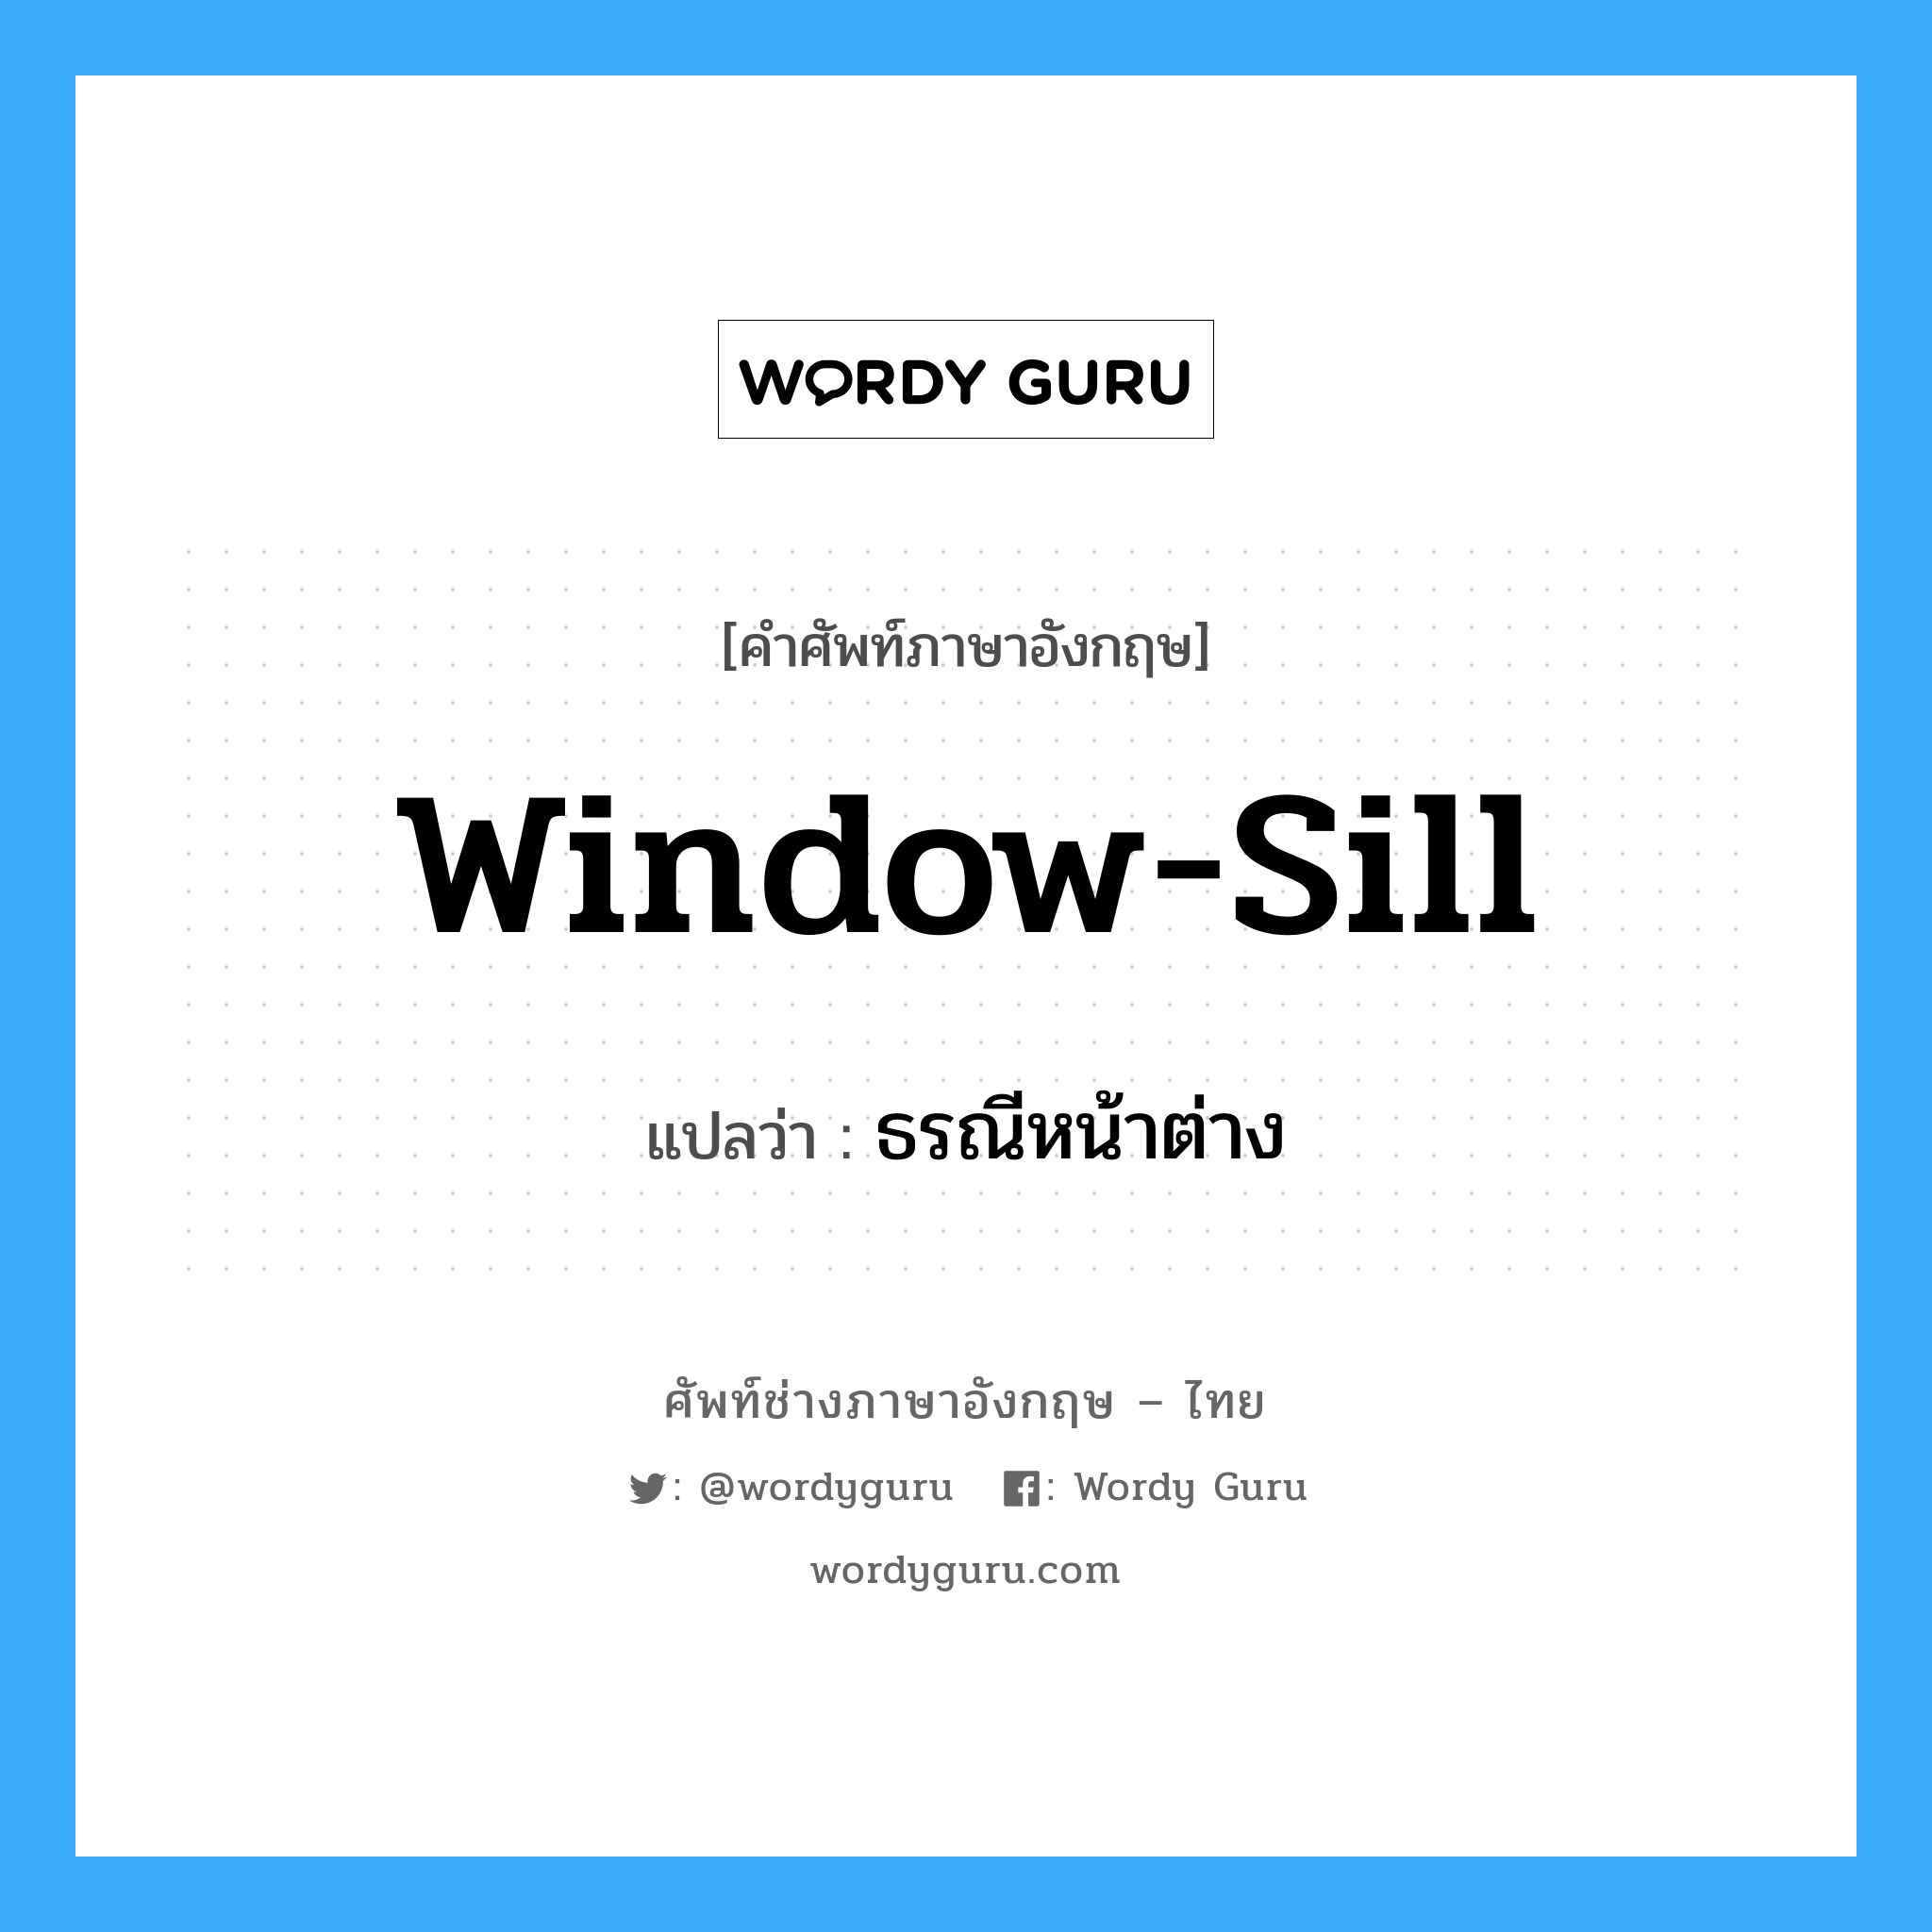 ธรณีหน้าต่าง ภาษาอังกฤษ?, คำศัพท์ช่างภาษาอังกฤษ - ไทย ธรณีหน้าต่าง คำศัพท์ภาษาอังกฤษ ธรณีหน้าต่าง แปลว่า window-sill